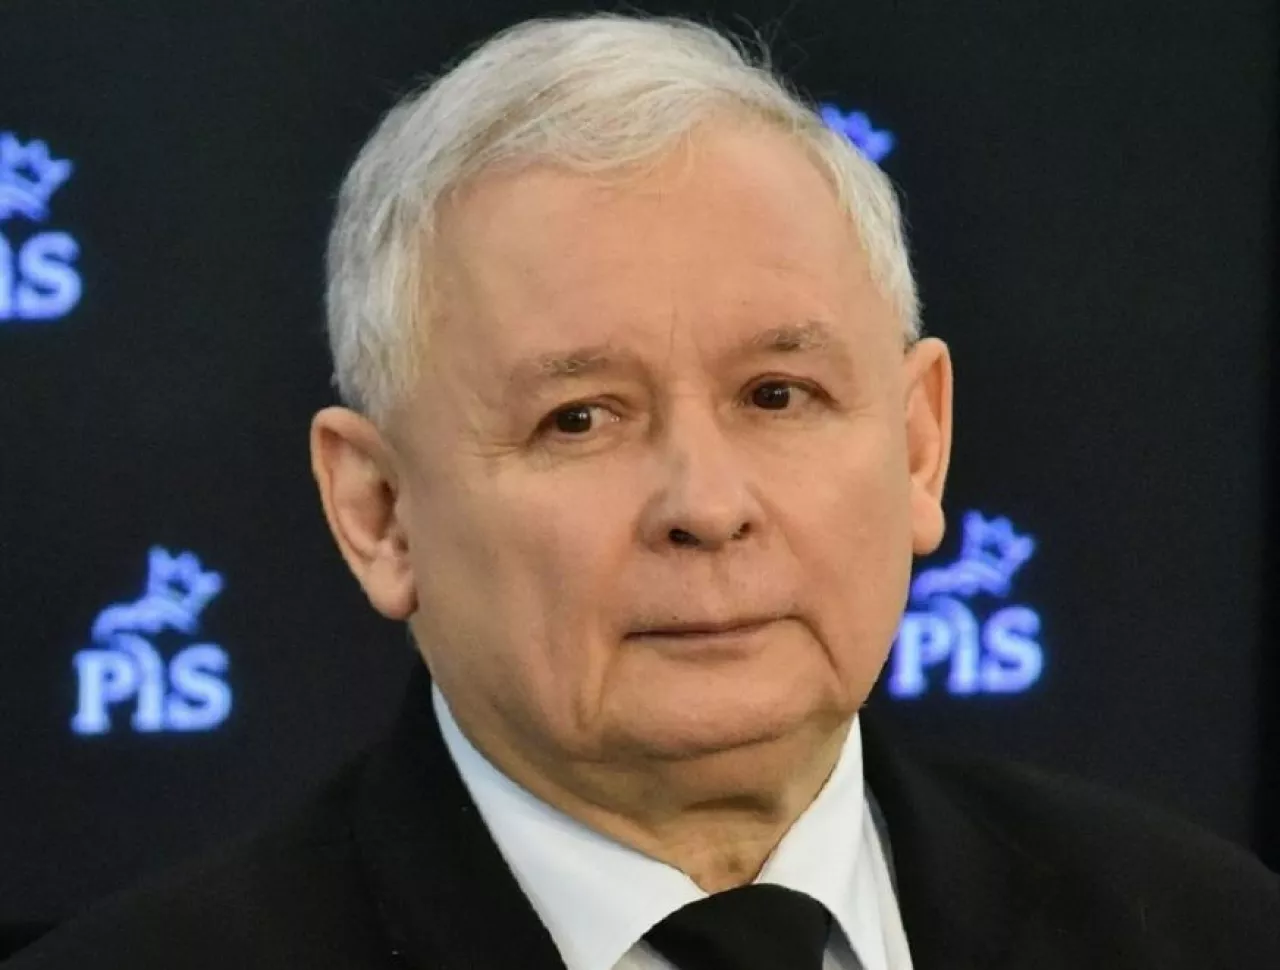 Prezes Prawa i Sprawiedliwości Jarosław Kaczyński chce, aby prace nad podatkiem handlowym były kontynuowane (fot. Wikimedia Commons/A. Grycuk, na lic. CC BY-SA 3.0 pl)